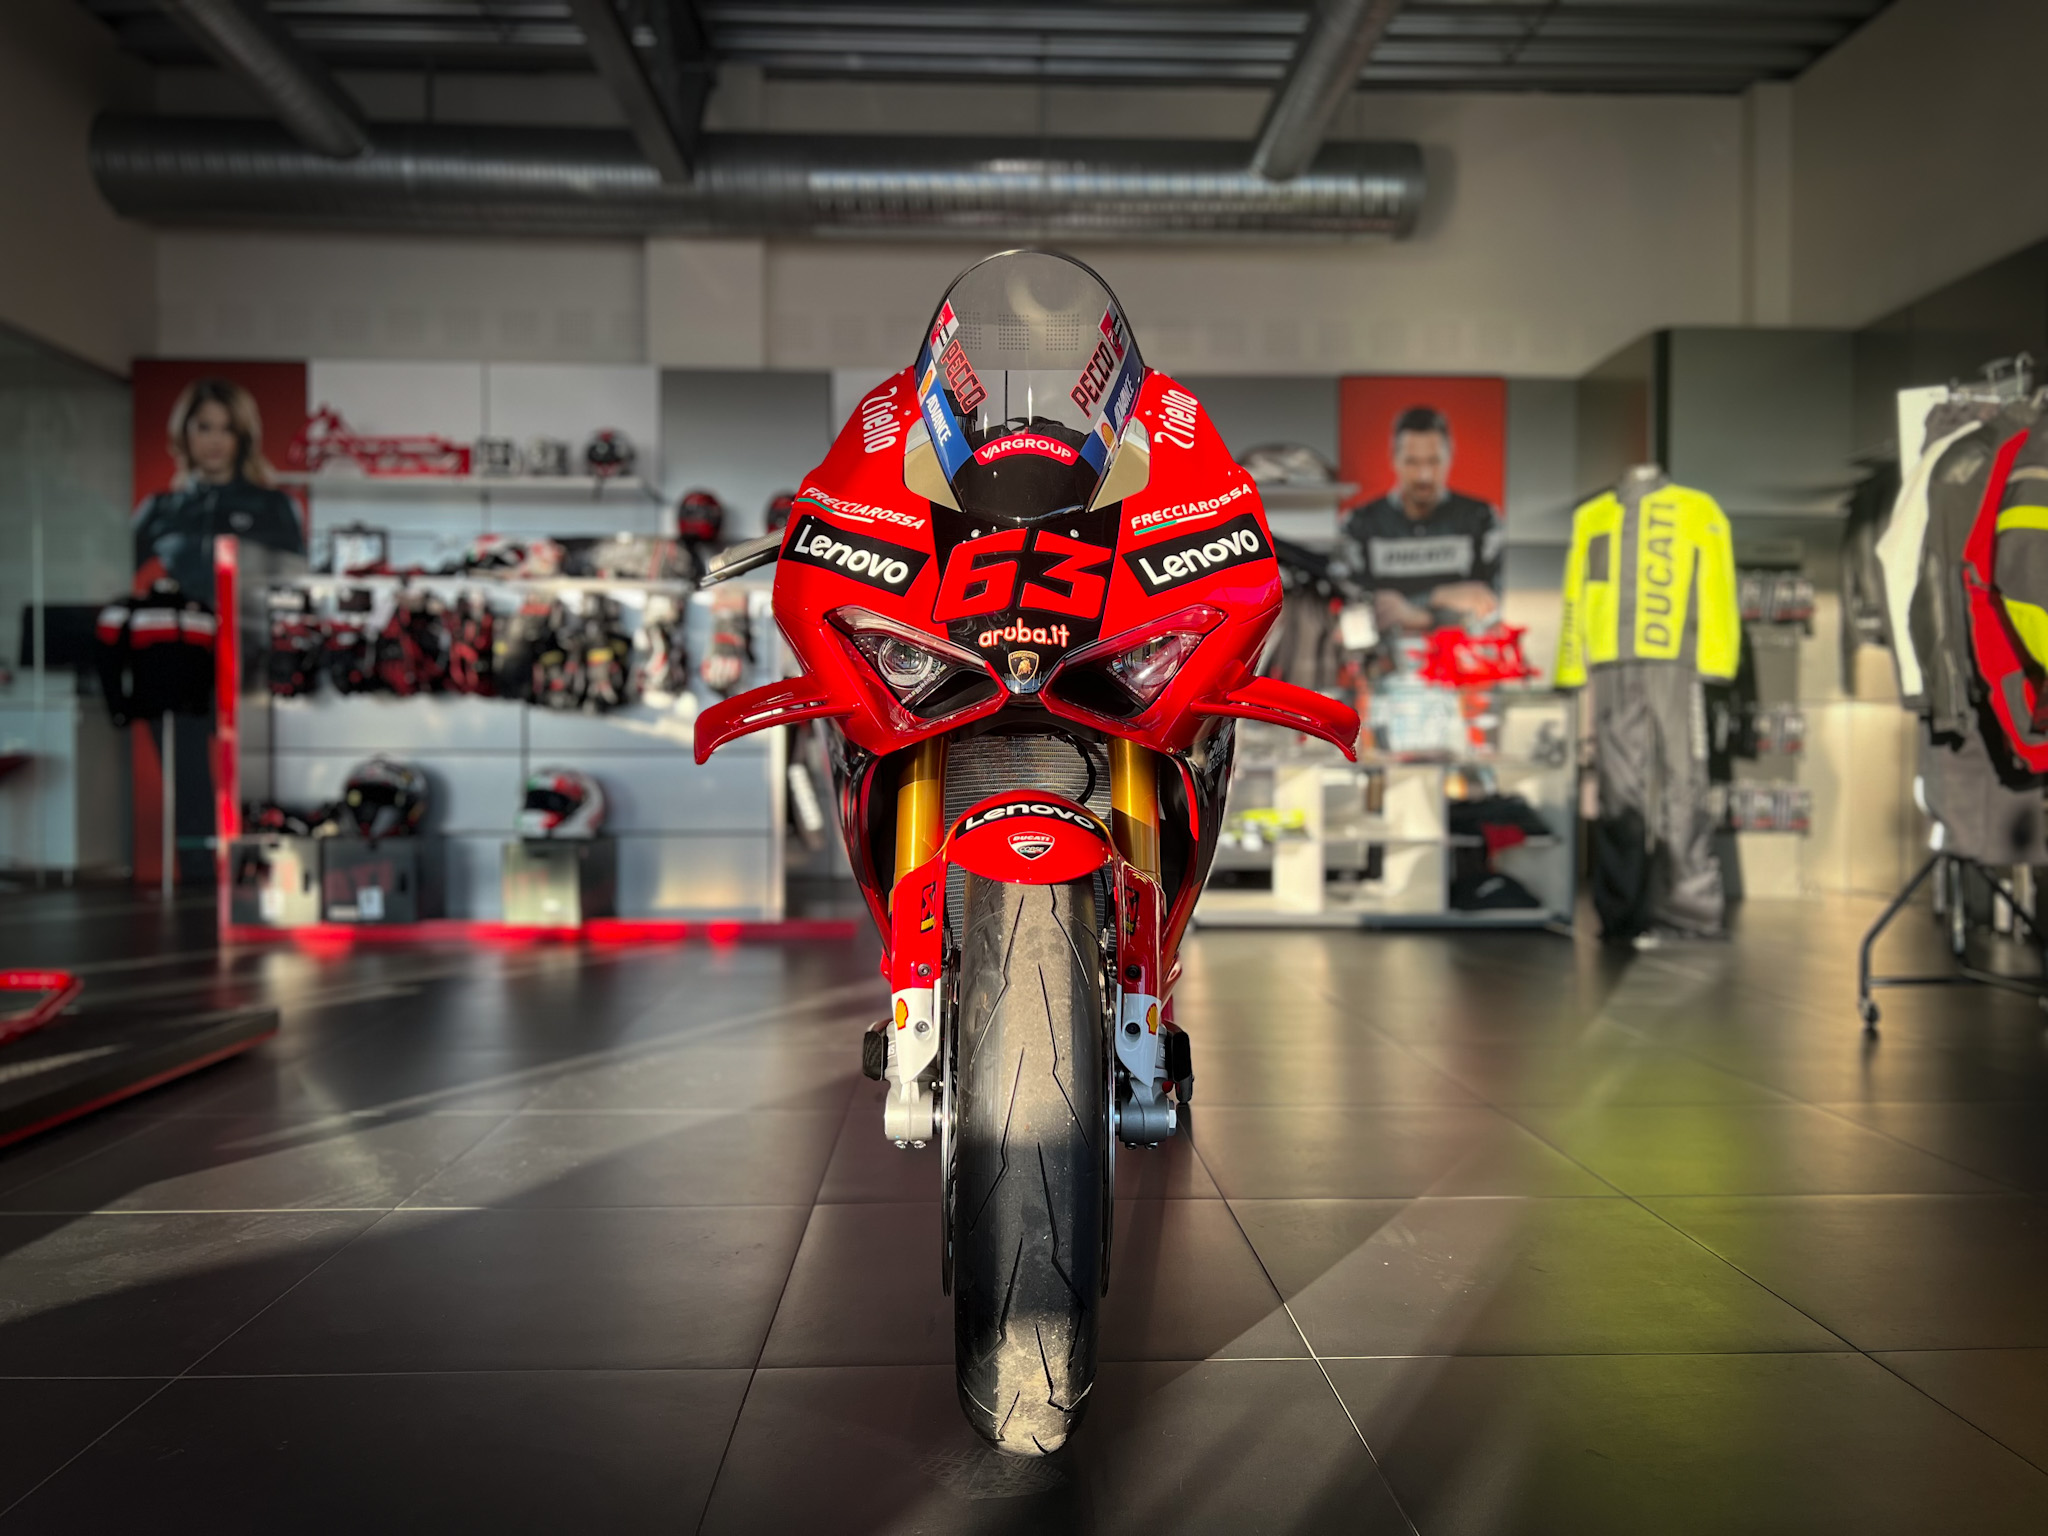 Ducati Panigale V4 Bagnia 2022 World Champion Replica (4)